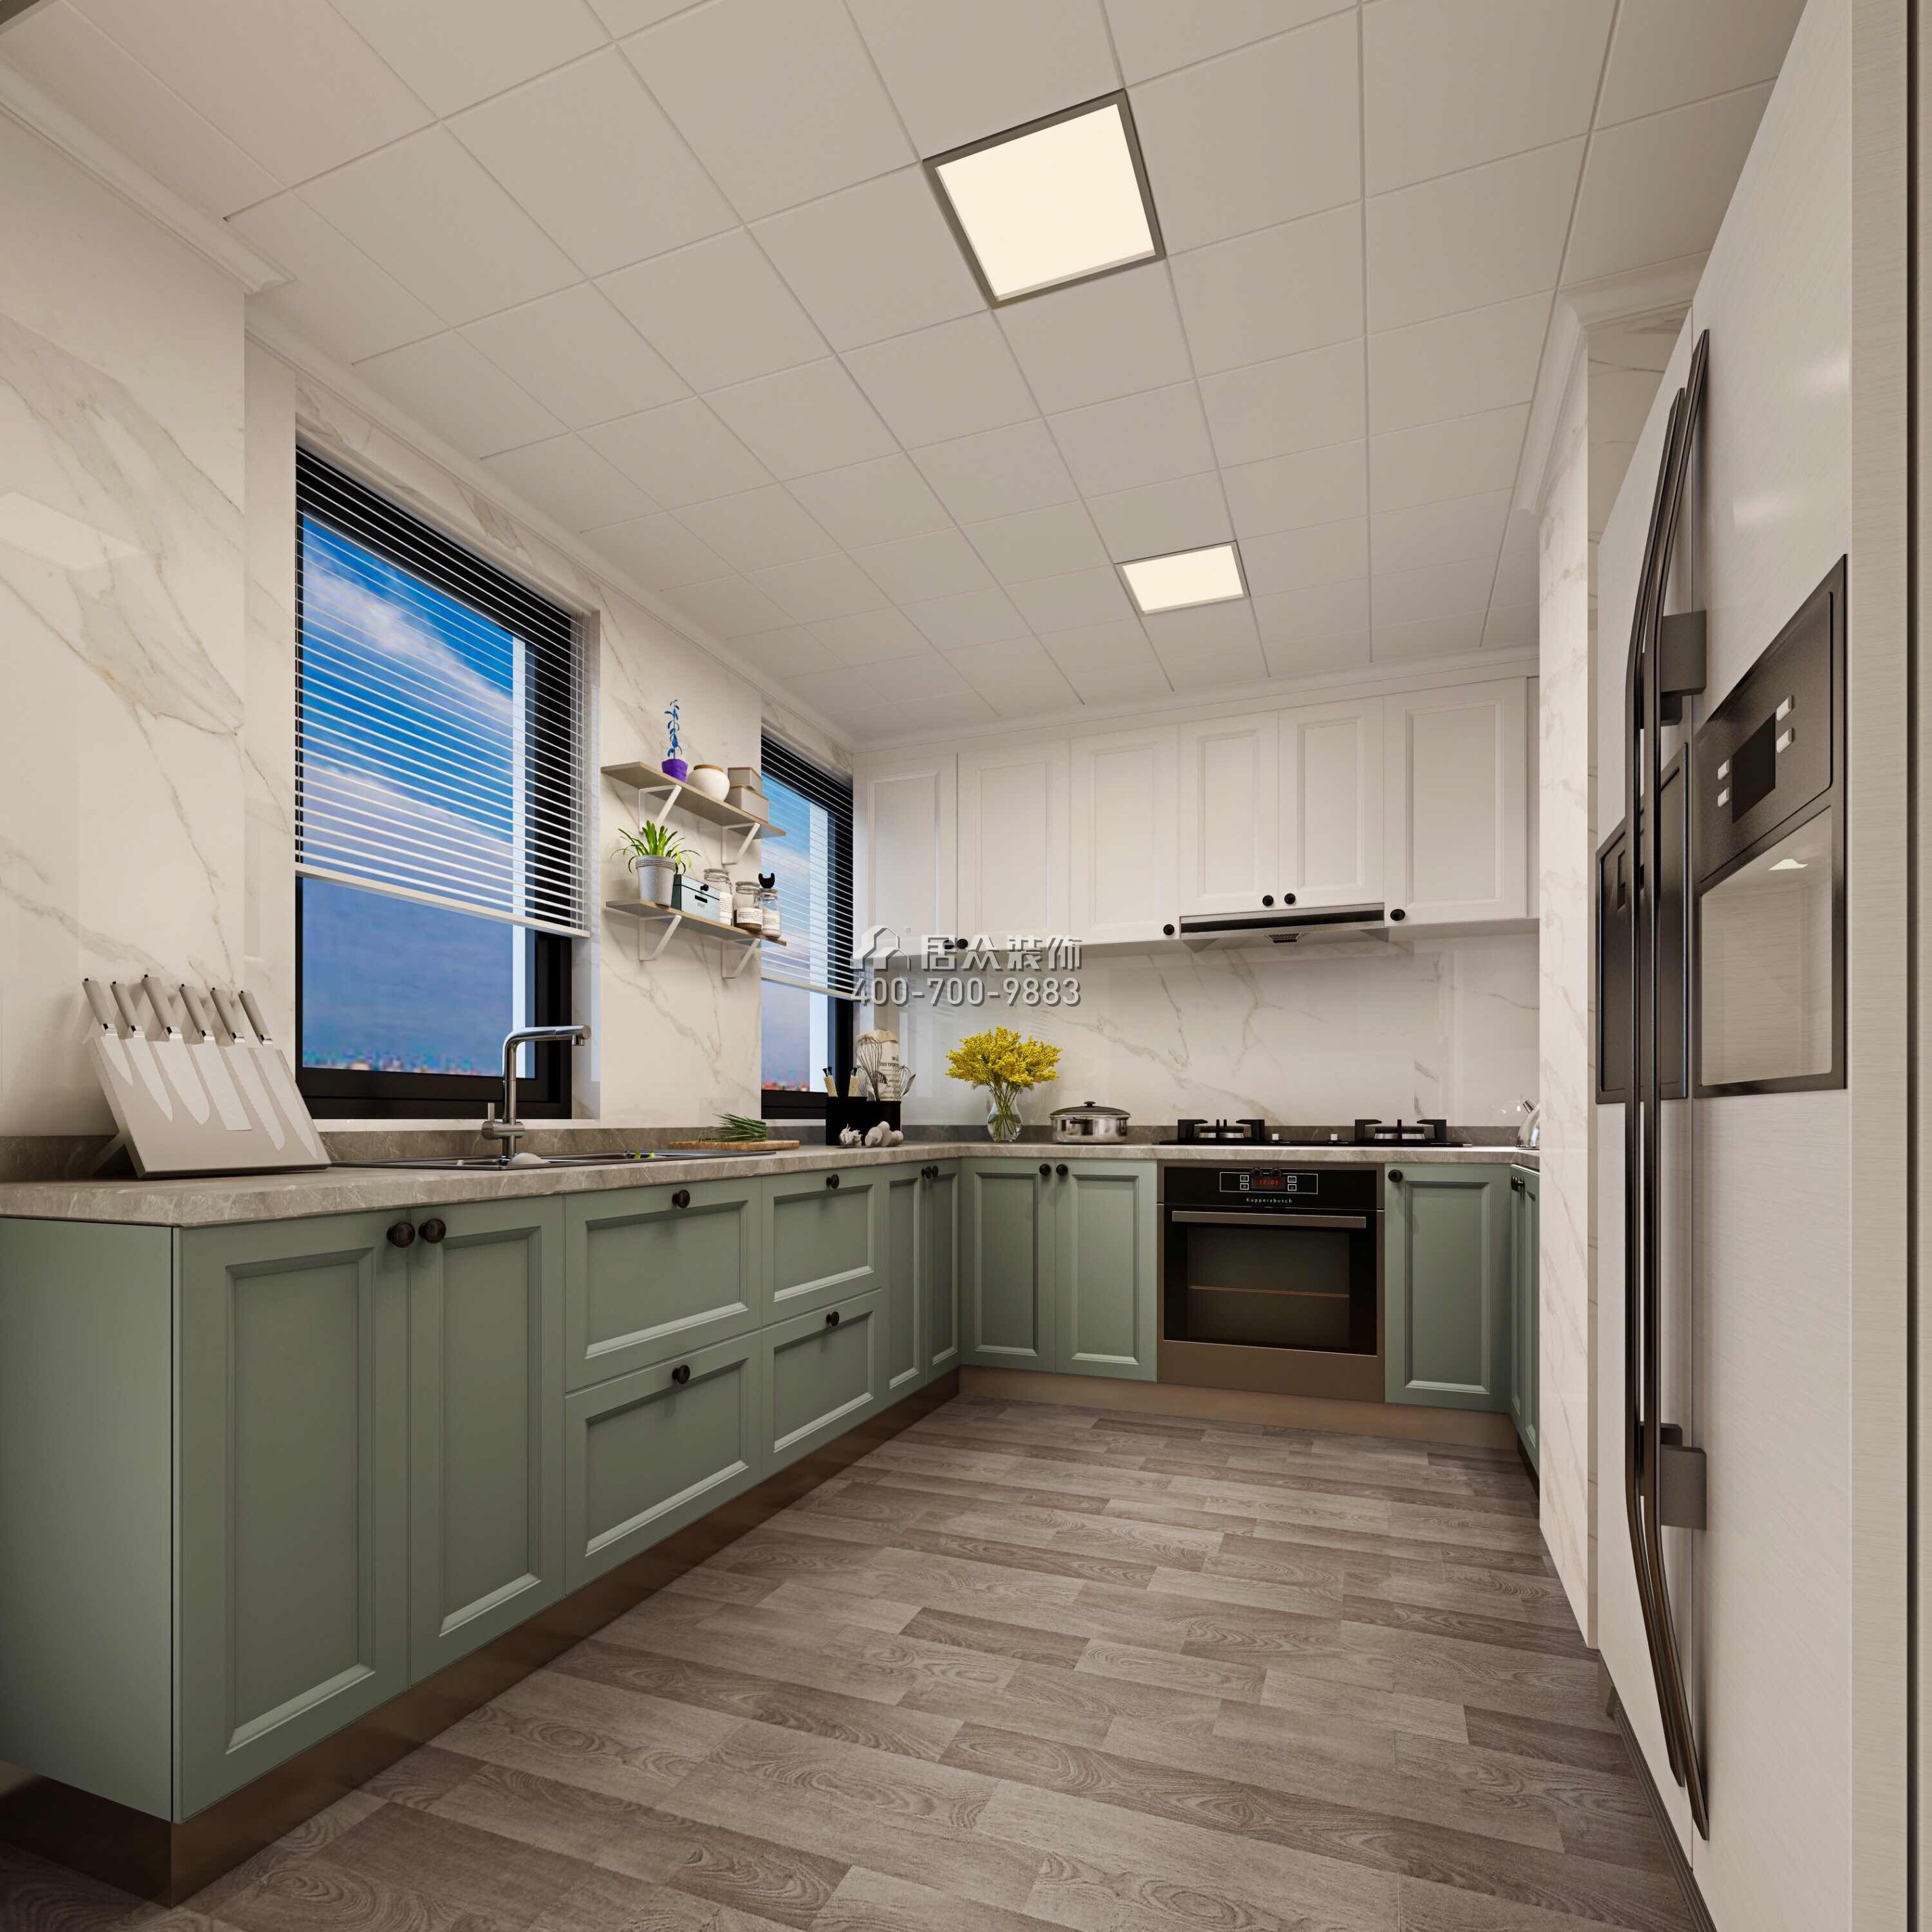 星河傳說聚星島110平方米美式風格平層戶型廚房裝修效果圖